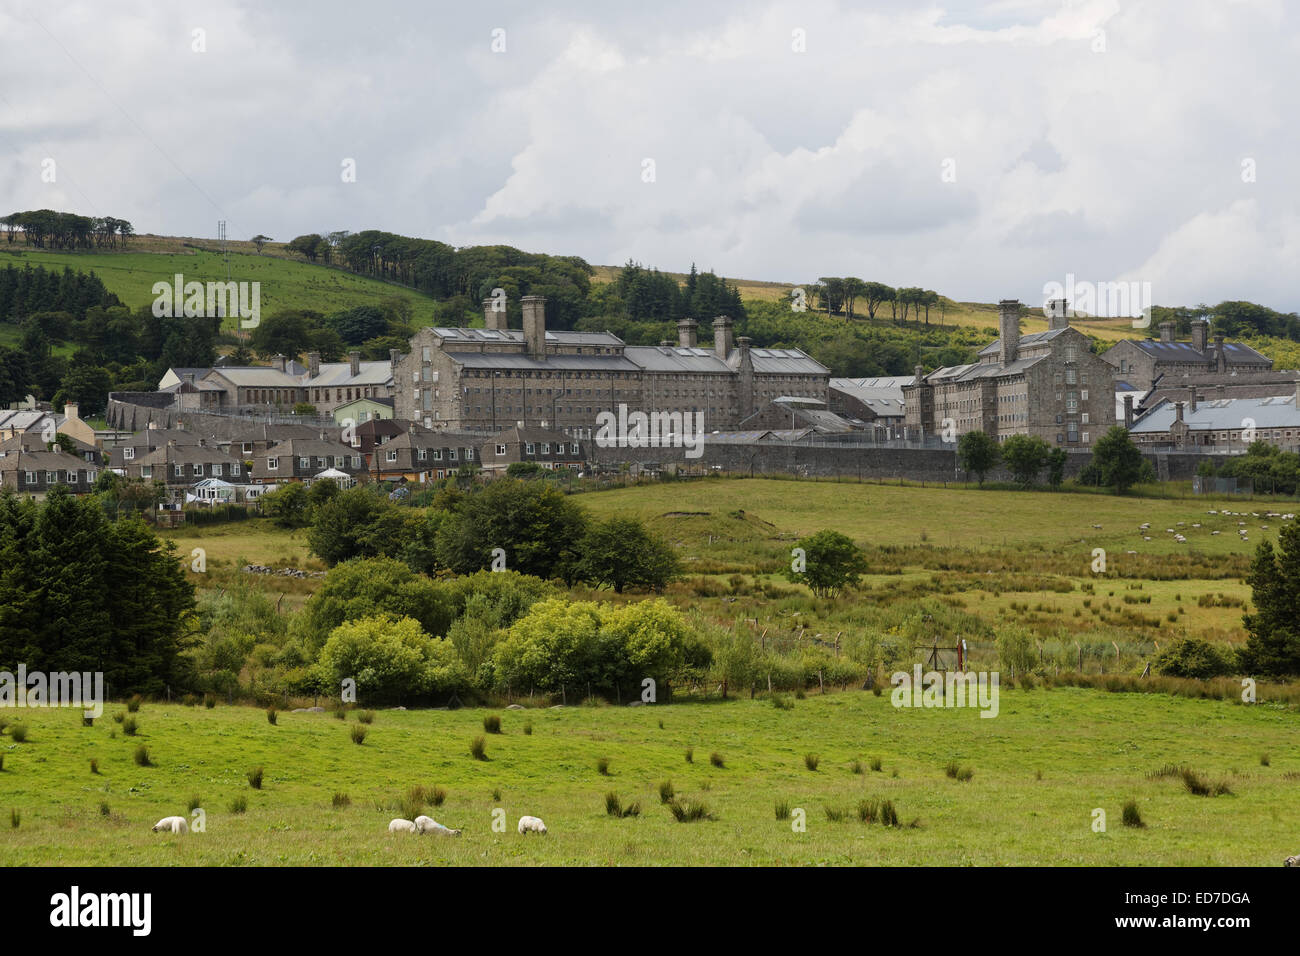 HM Prison Dartmoor in Princetown, Dartmoor, Devon, UK. Stock Photo